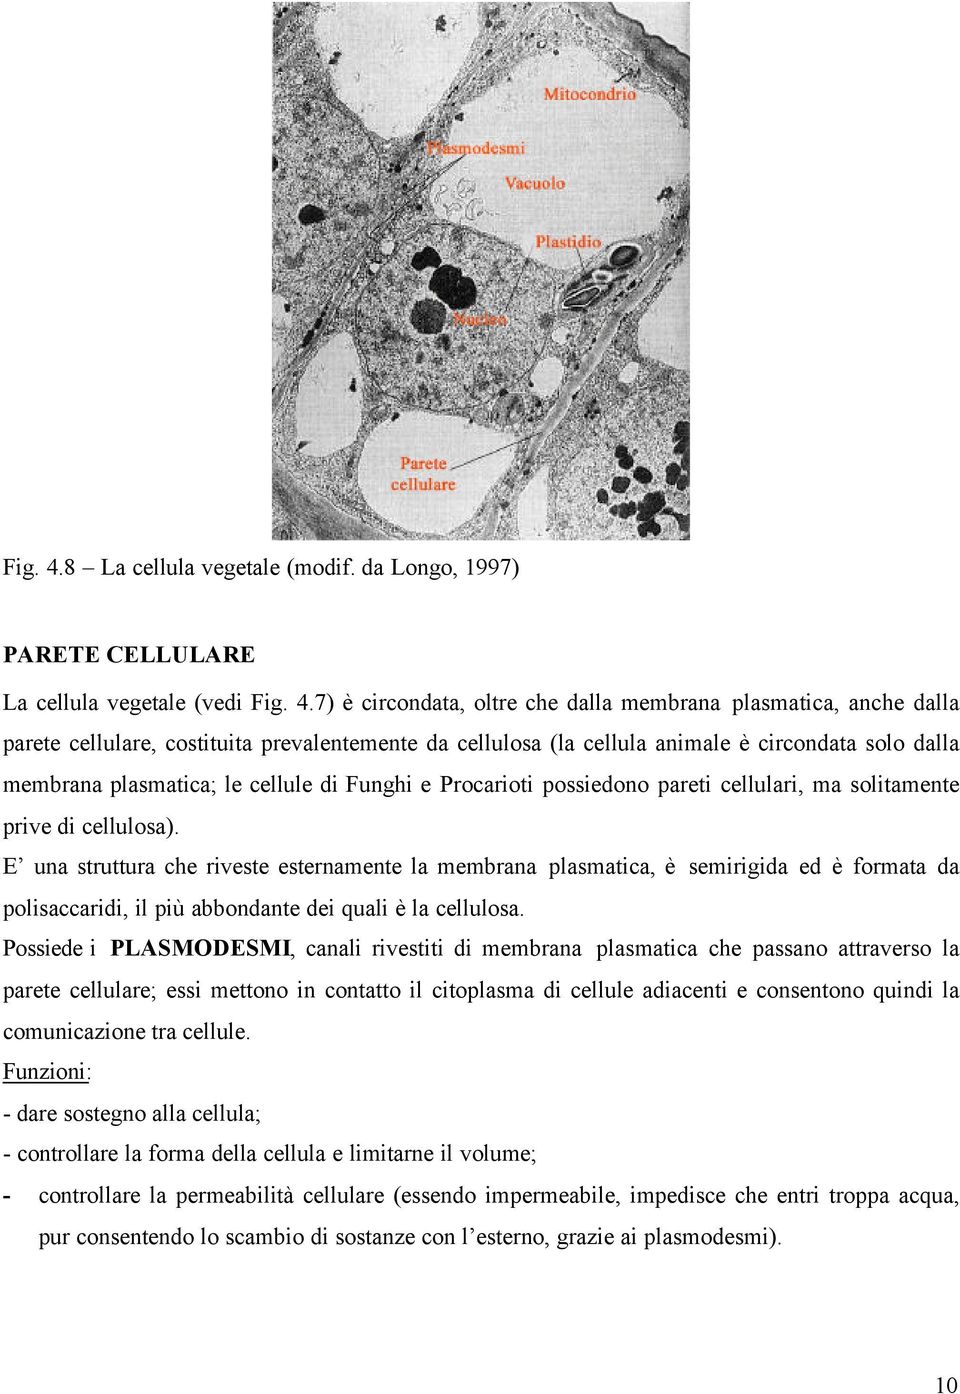 da Longo, 1997) PARETE CELLULARE La cellula vegetale (vedi 7) è circondata, oltre che dalla membrana plasmatica, anche dalla parete cellulare, costituita prevalentemente da cellulosa (la cellula